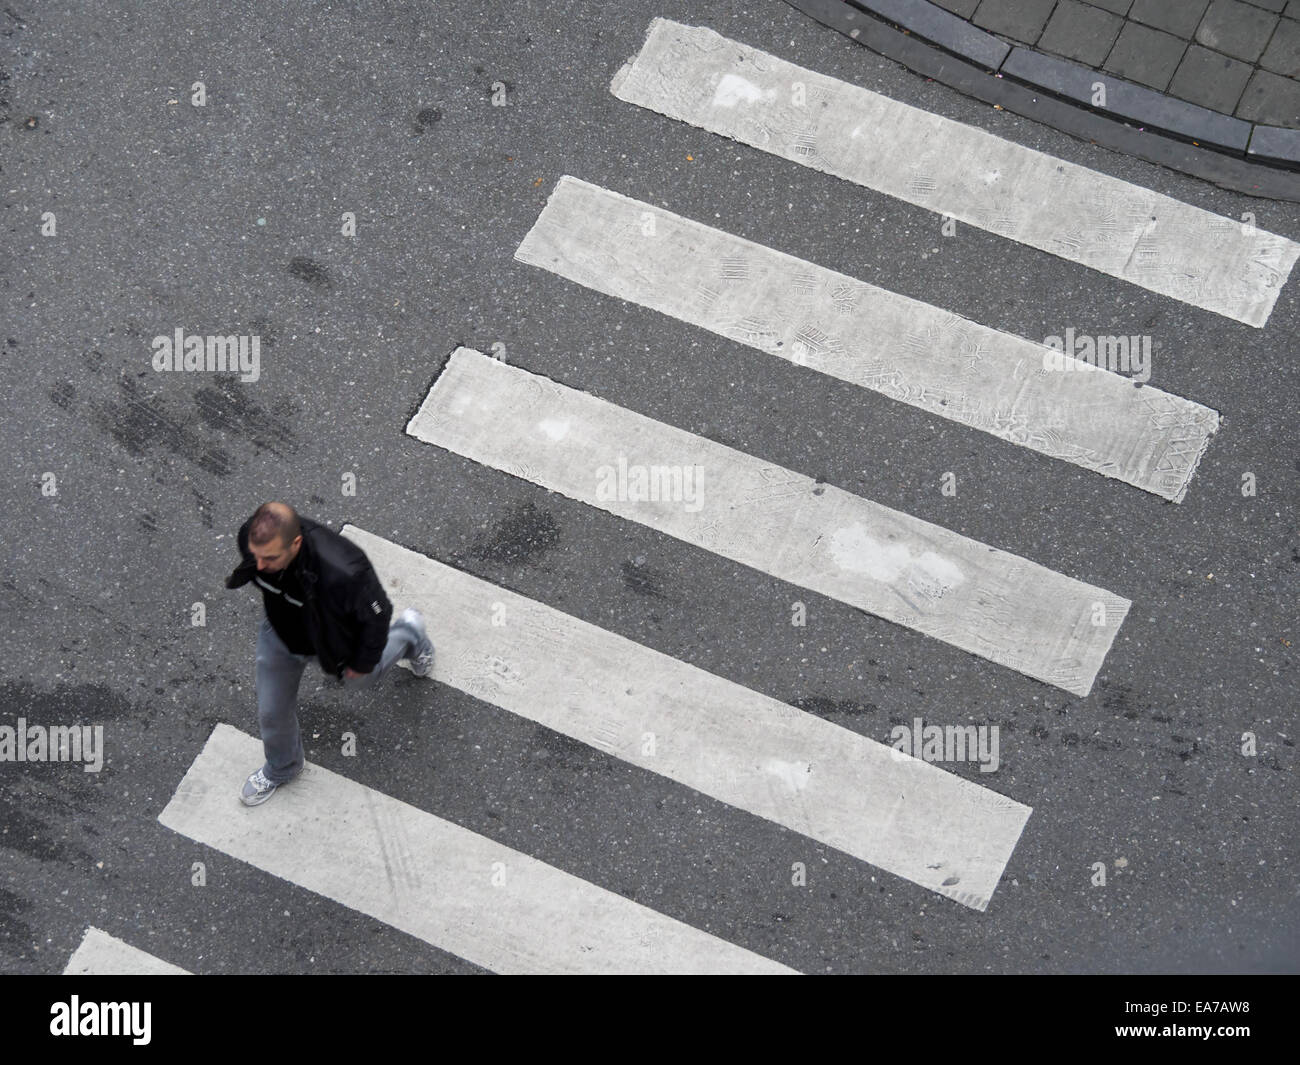 Vue aérienne d'une personne qui entre dans un passage pour piétons Banque D'Images